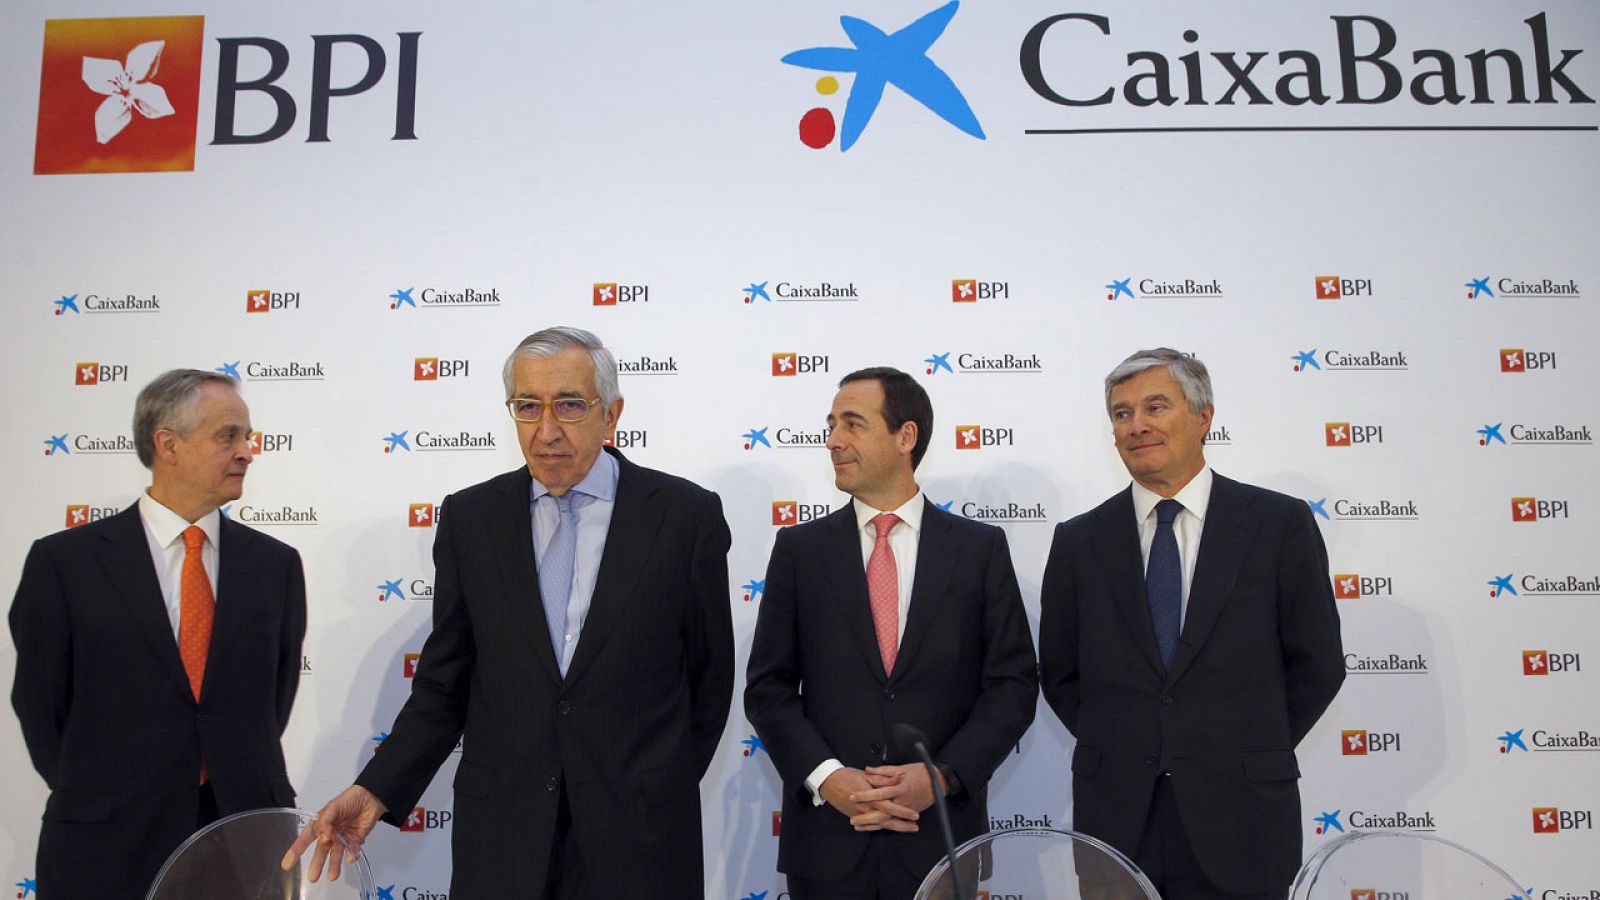 Rueda de prensa de CaixaBank y BPI en Portugal para explicar el resultado de la opa